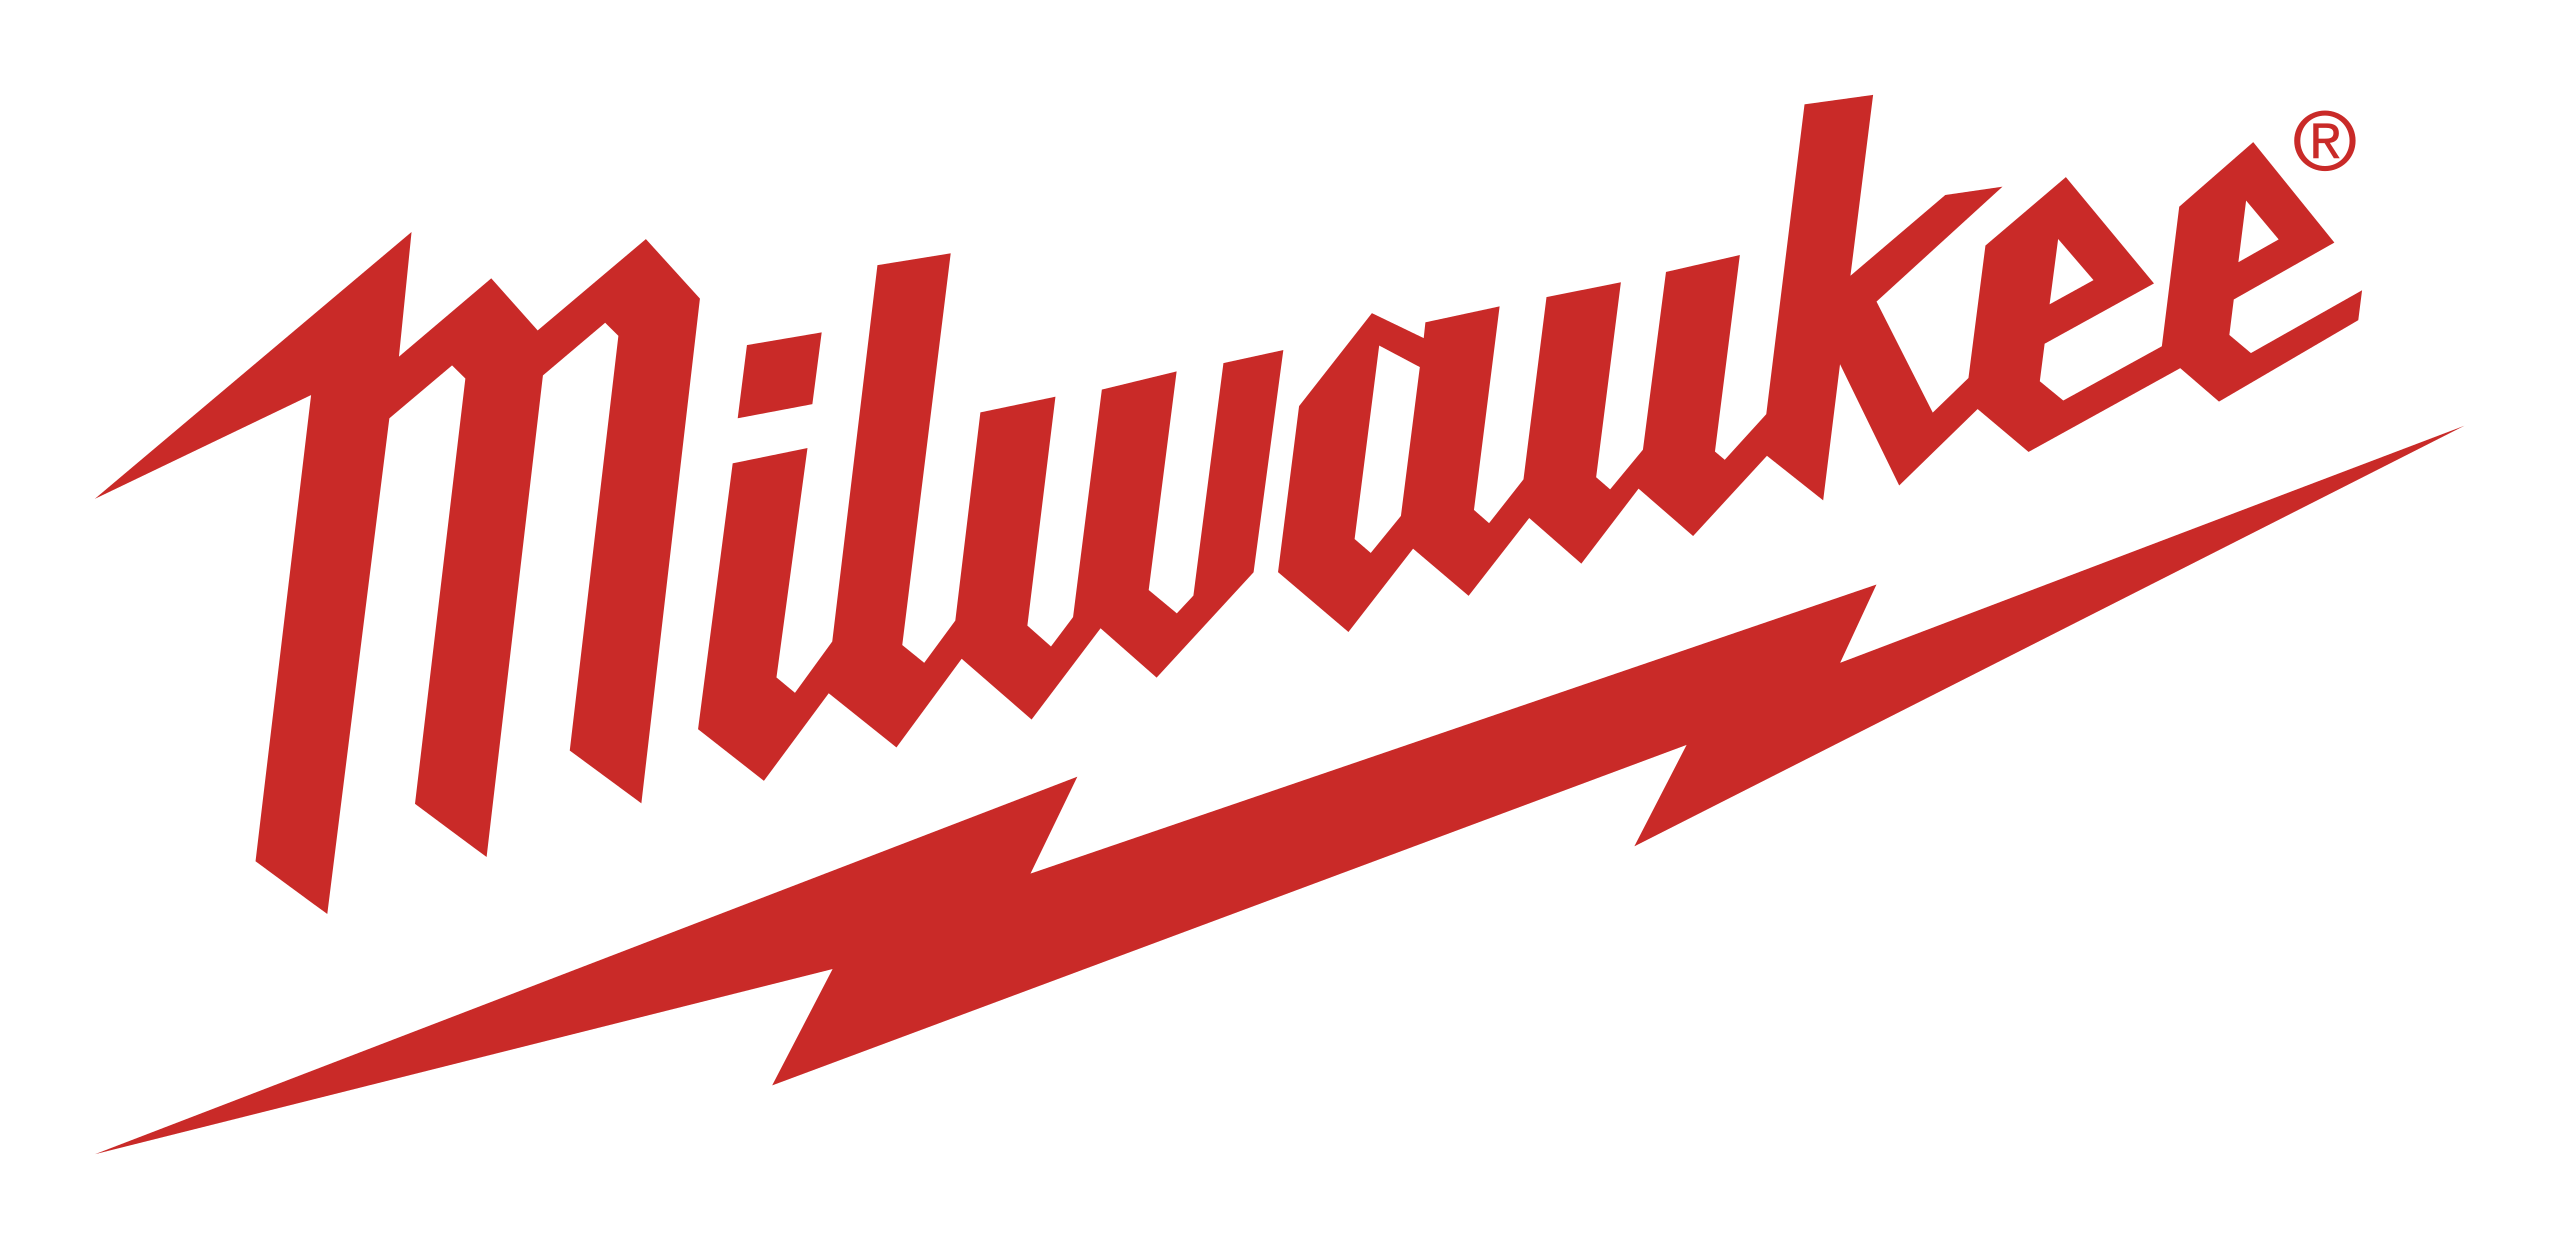 Milwaukee tools